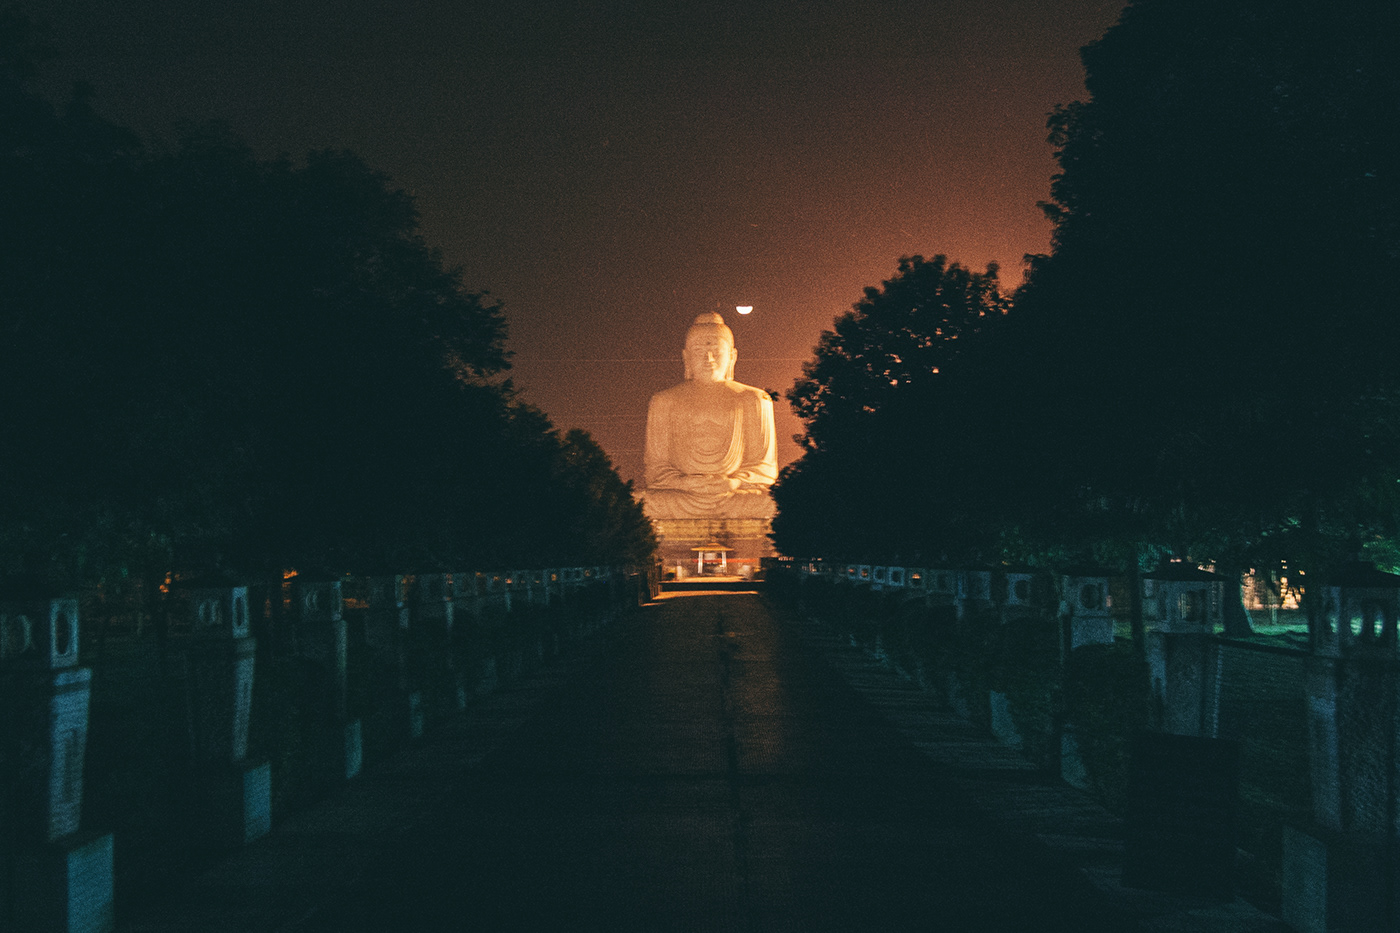 India Budhha photo world peace Delhi varanasi religion